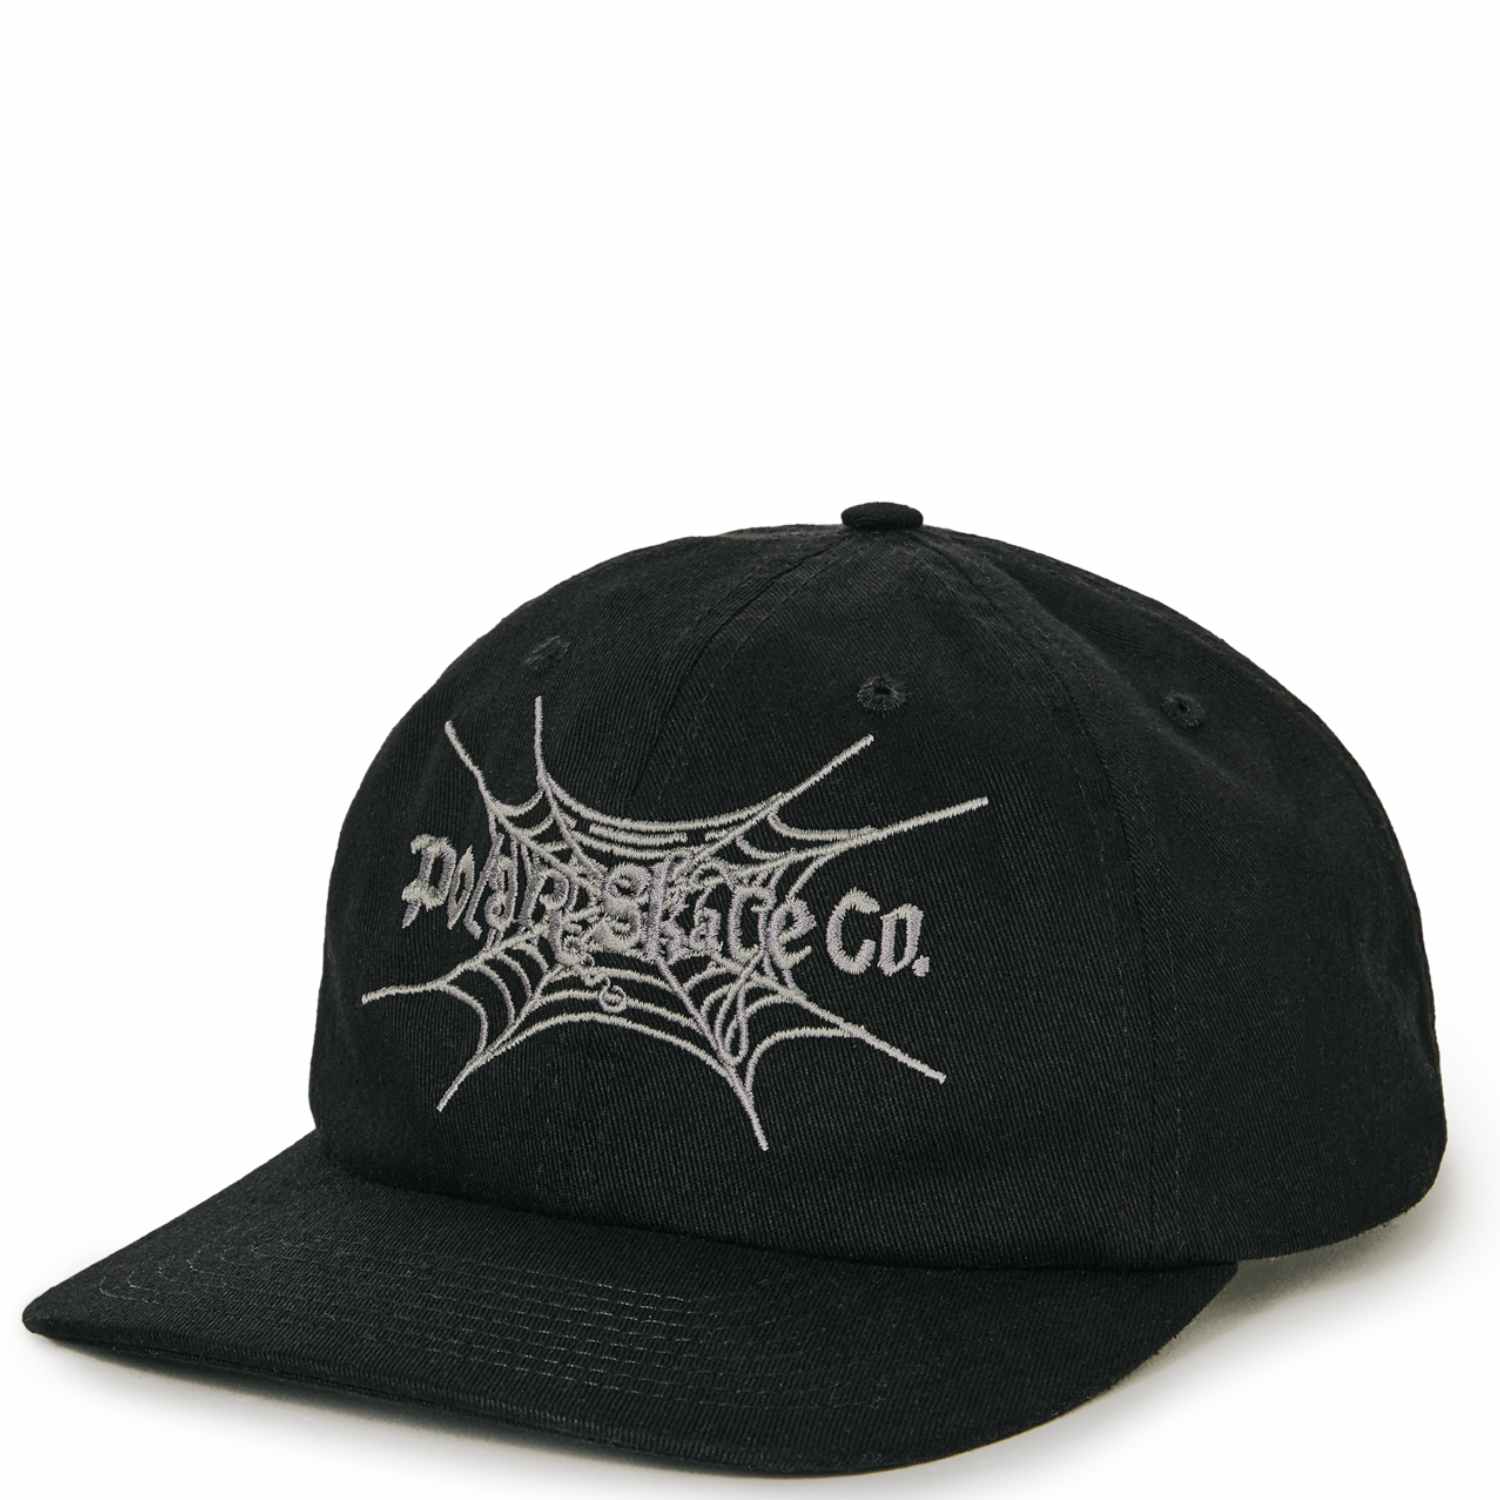 Polar - Michael Spiderweb Cap - Black